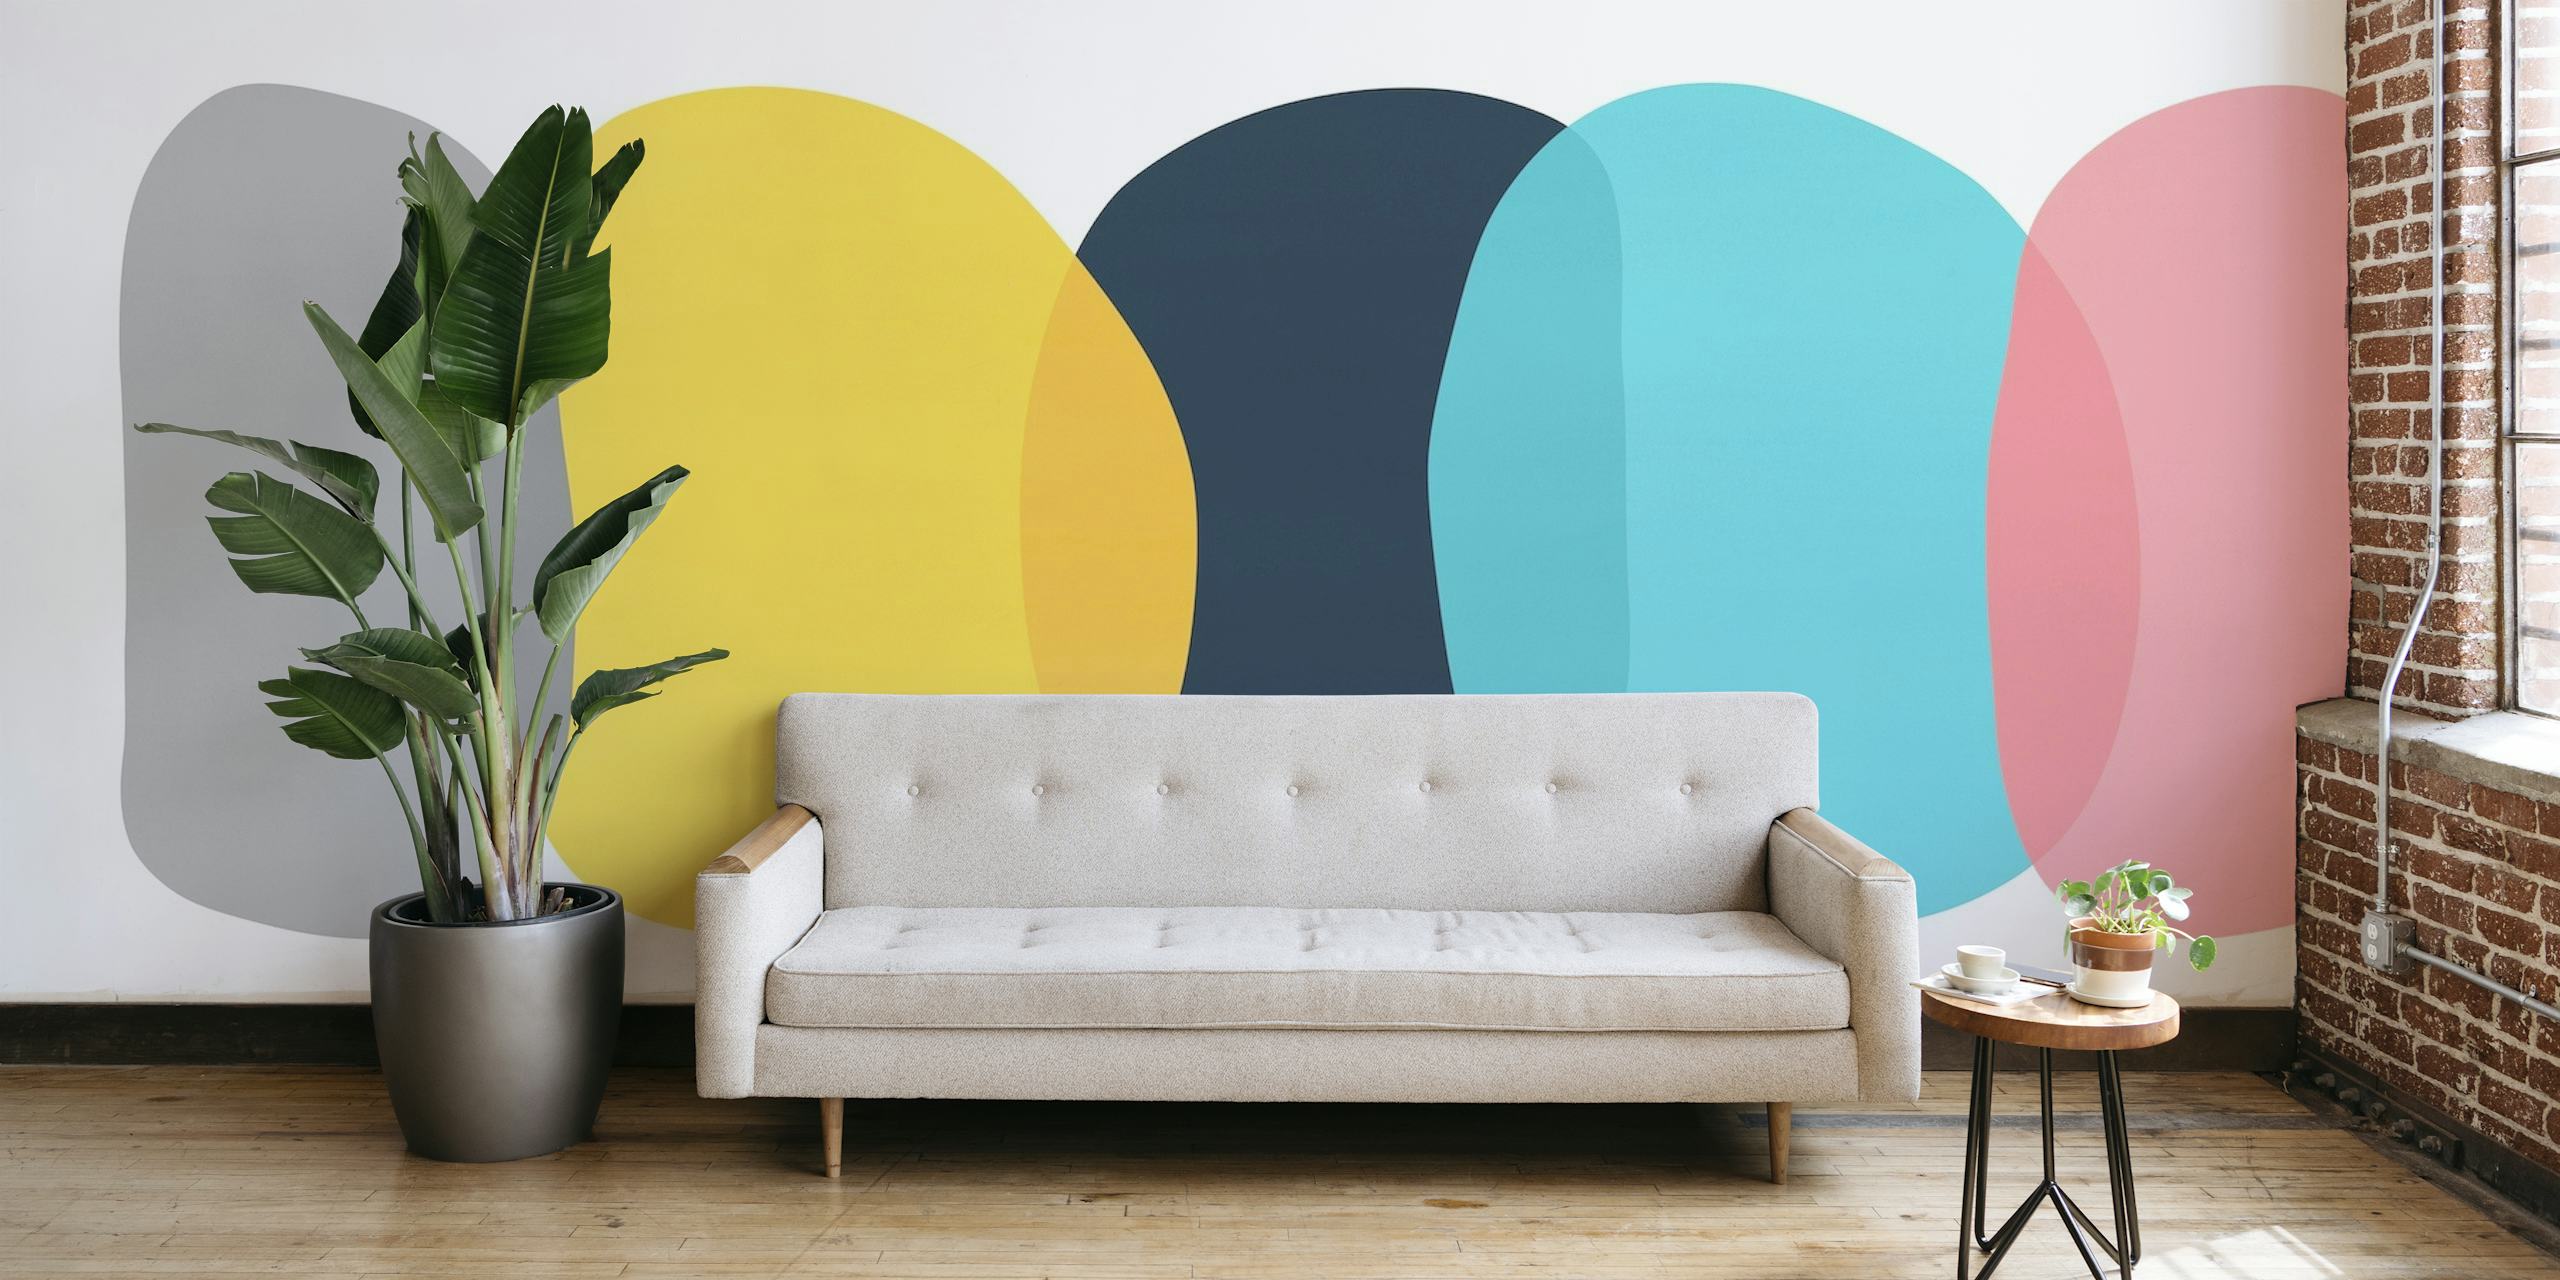 Mural de parede de formas abstratas com cores suaves e desenho geométrico